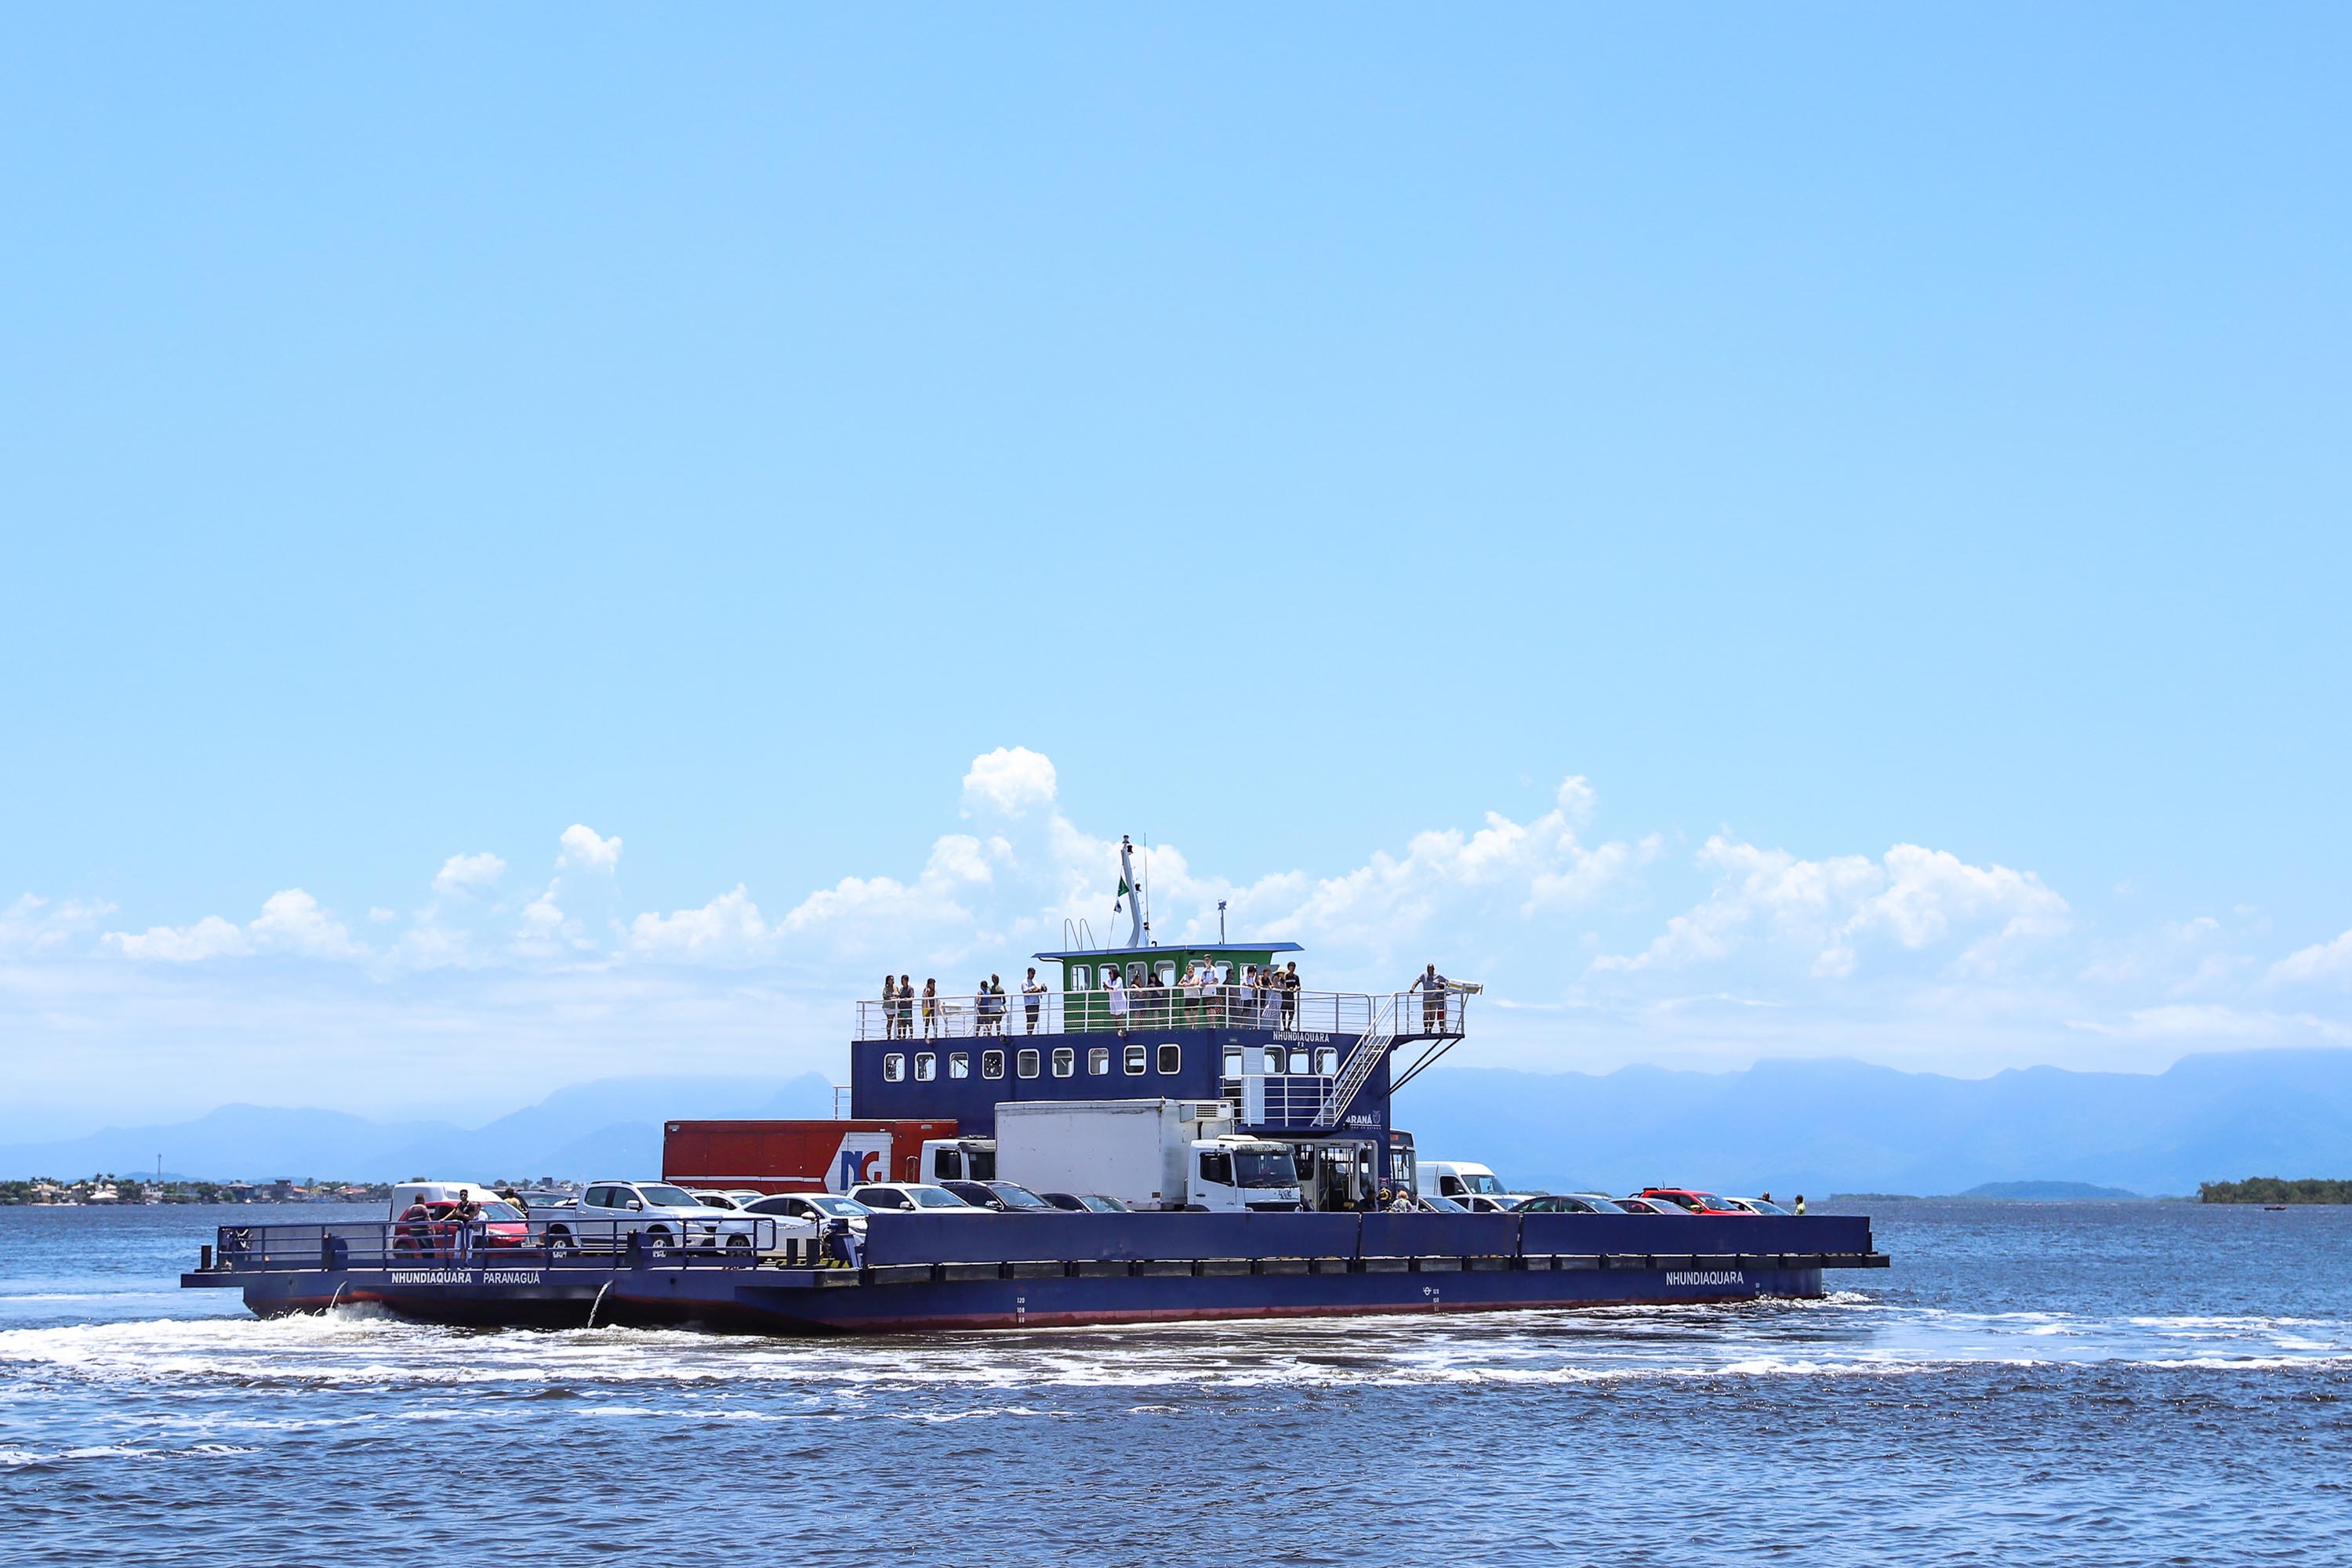 Licitação do ferry boat de Guaratuba tem vencedor confirmado 